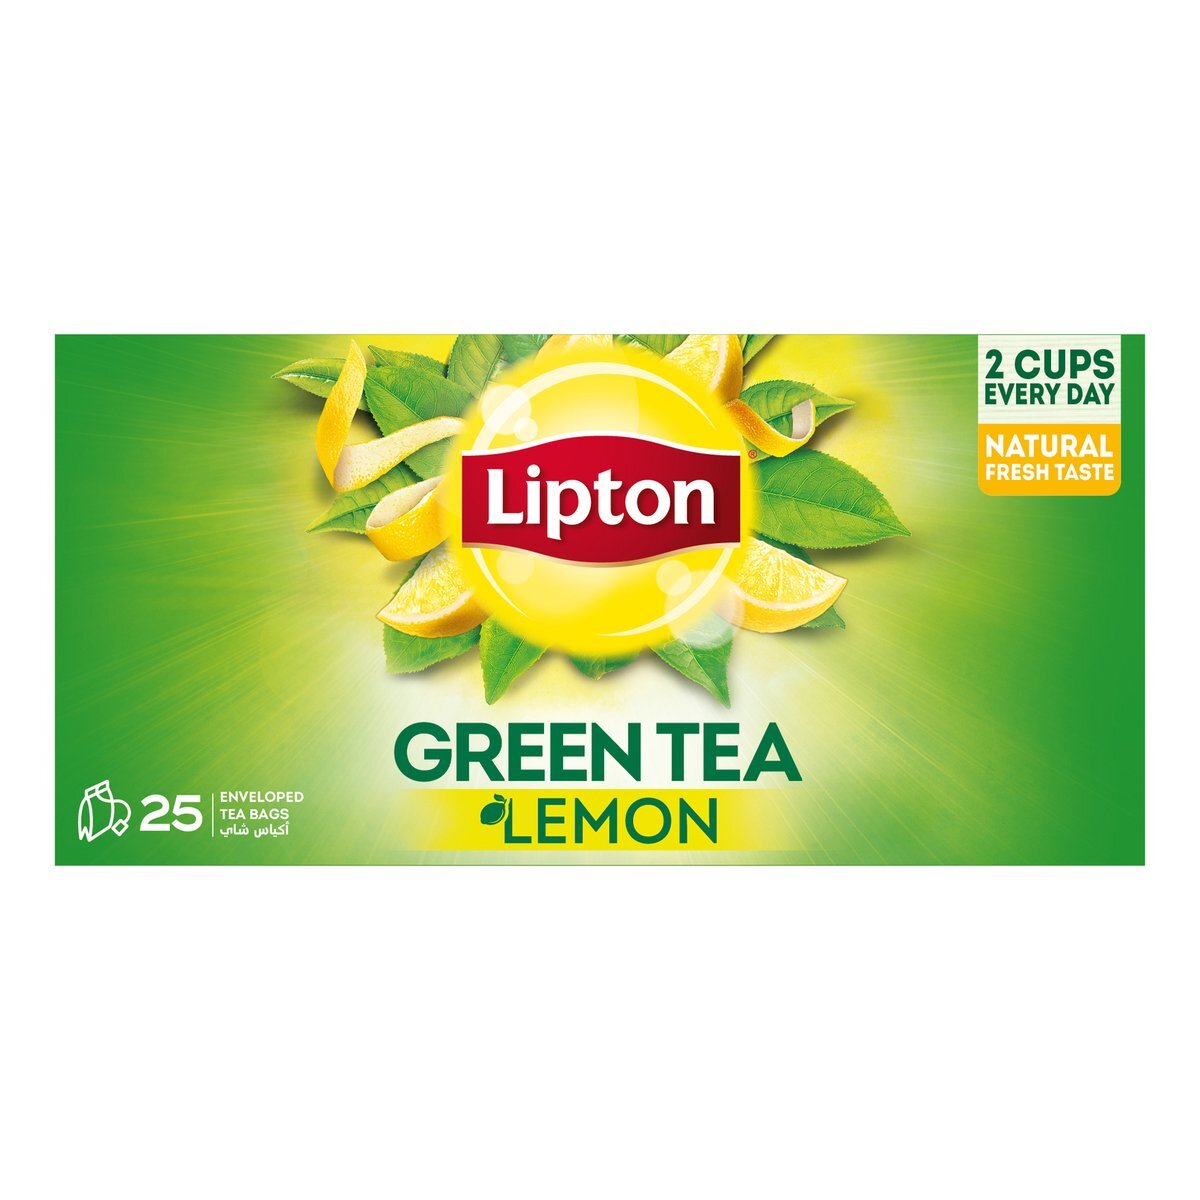 Buy Lipton Lemon Green Tea Value Pack 25 Teabags Online at Best Price | Green Tea | Lulu UAE in UAE